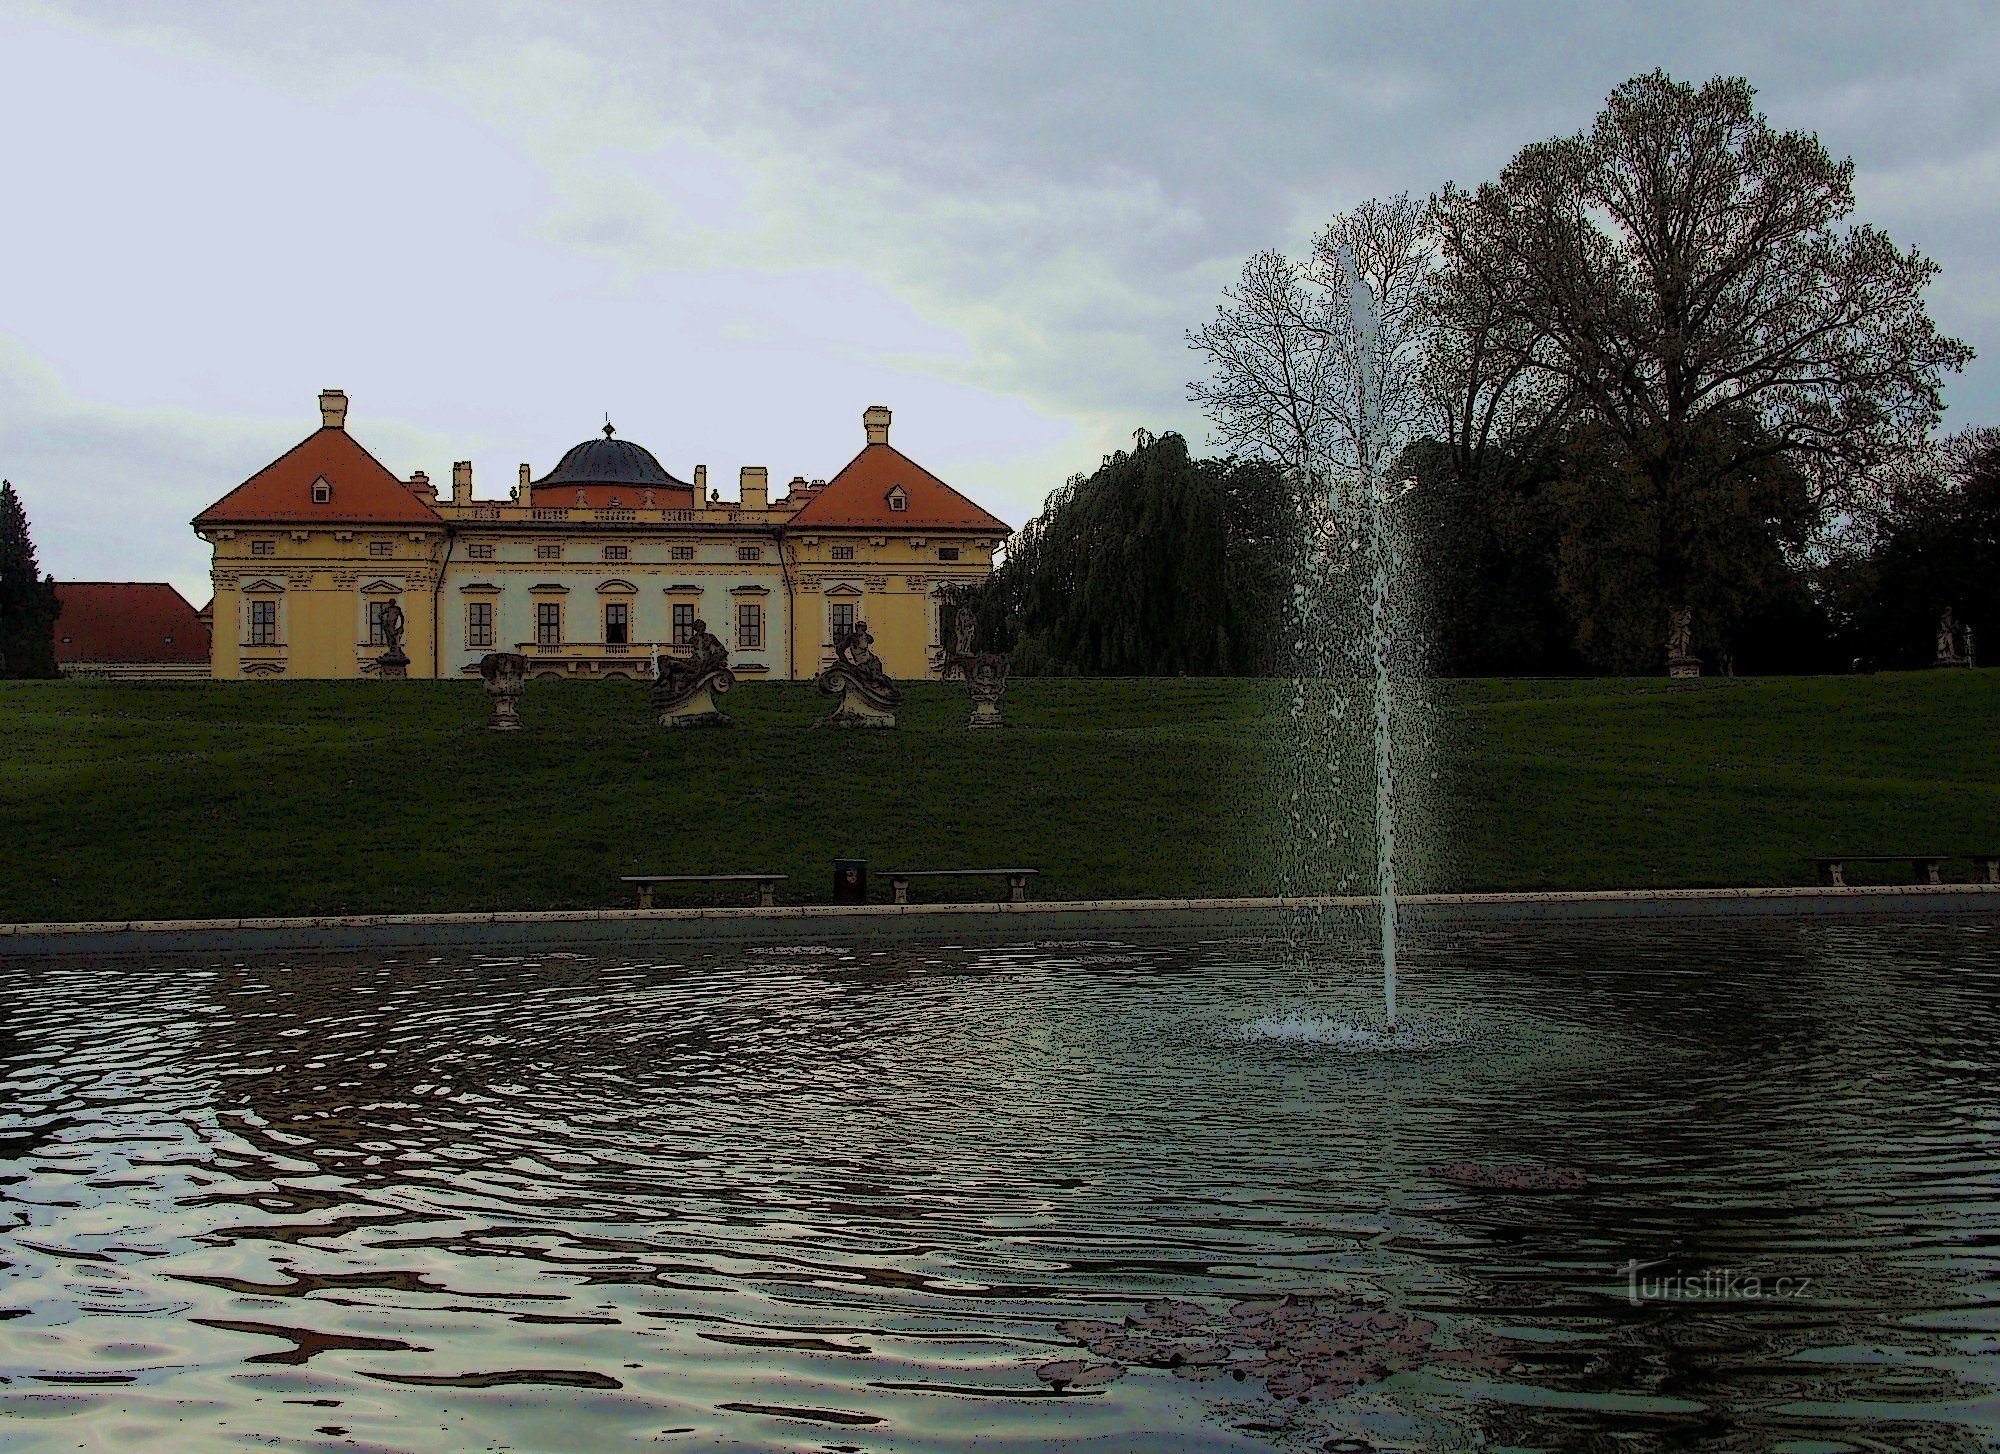 Uno dei giardini storici più importanti della Moravia